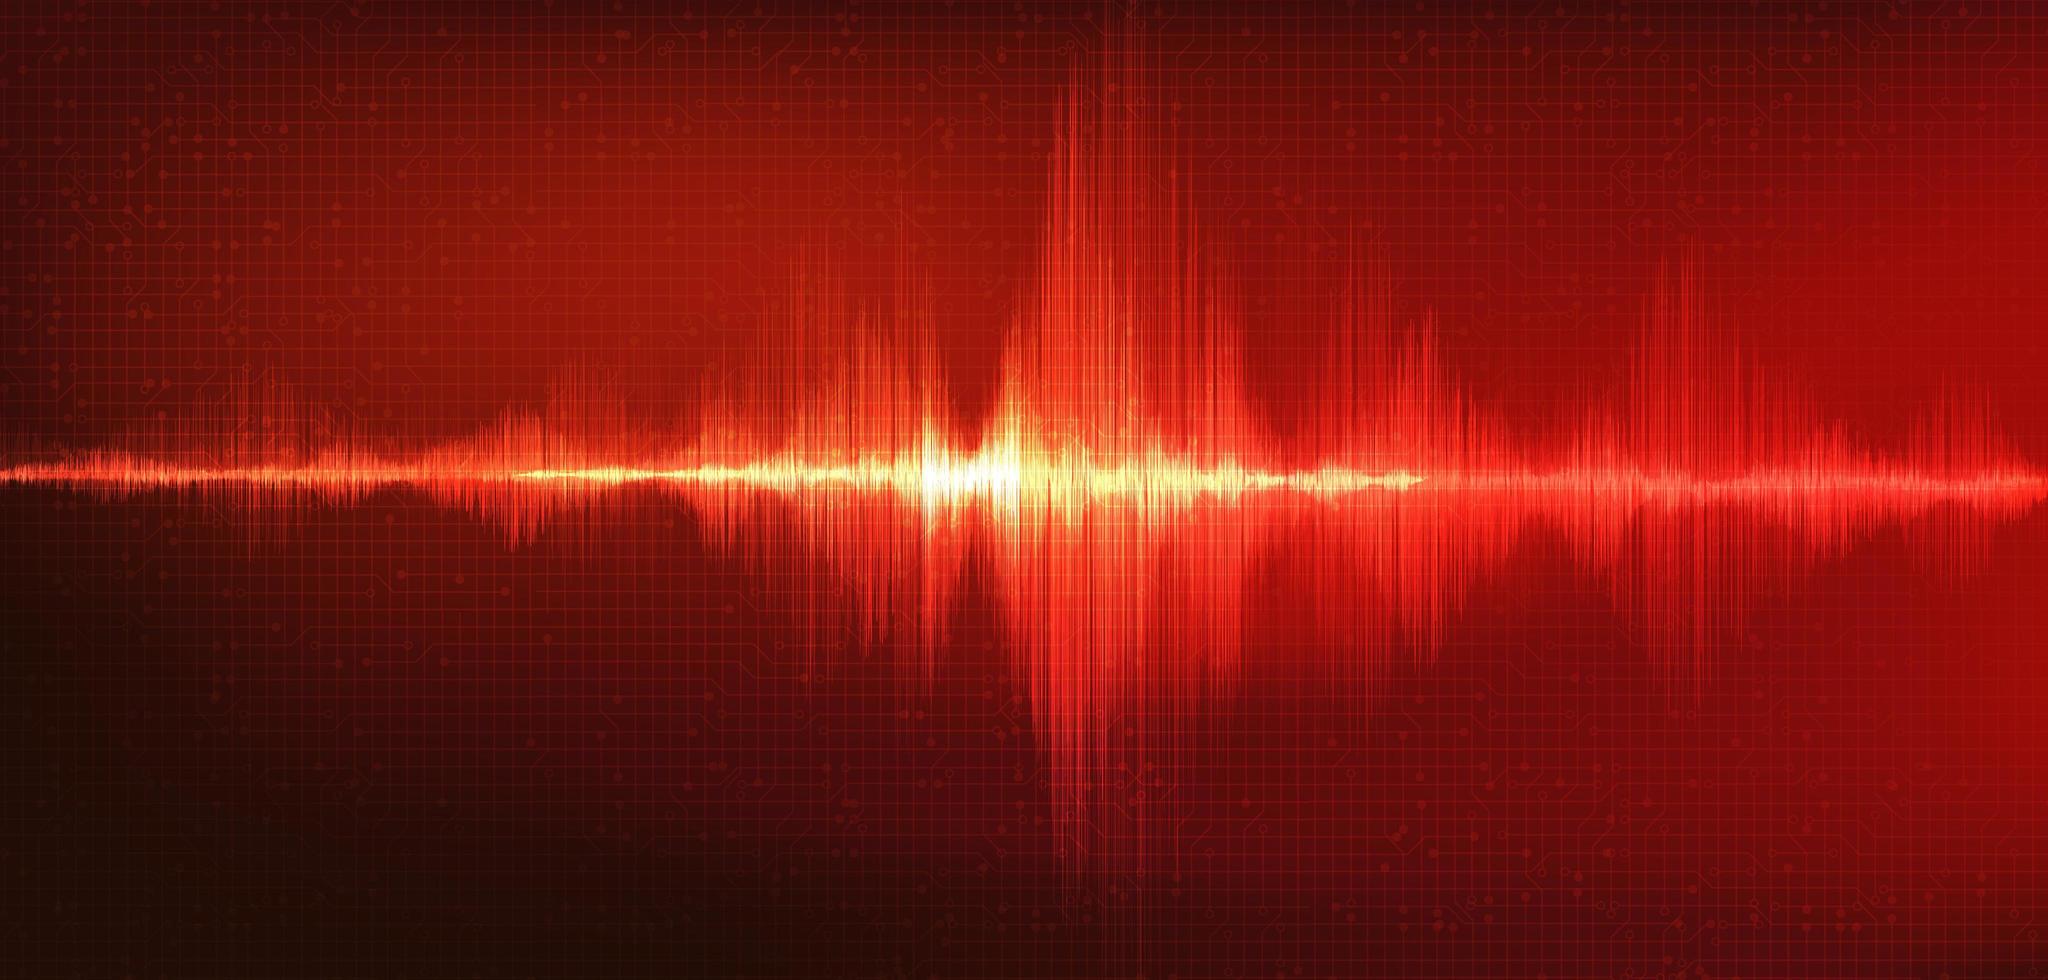 onda sonora digitale rossa scala richter bassa e alta con vibrazione del cerchio su sfondo rosso vettore